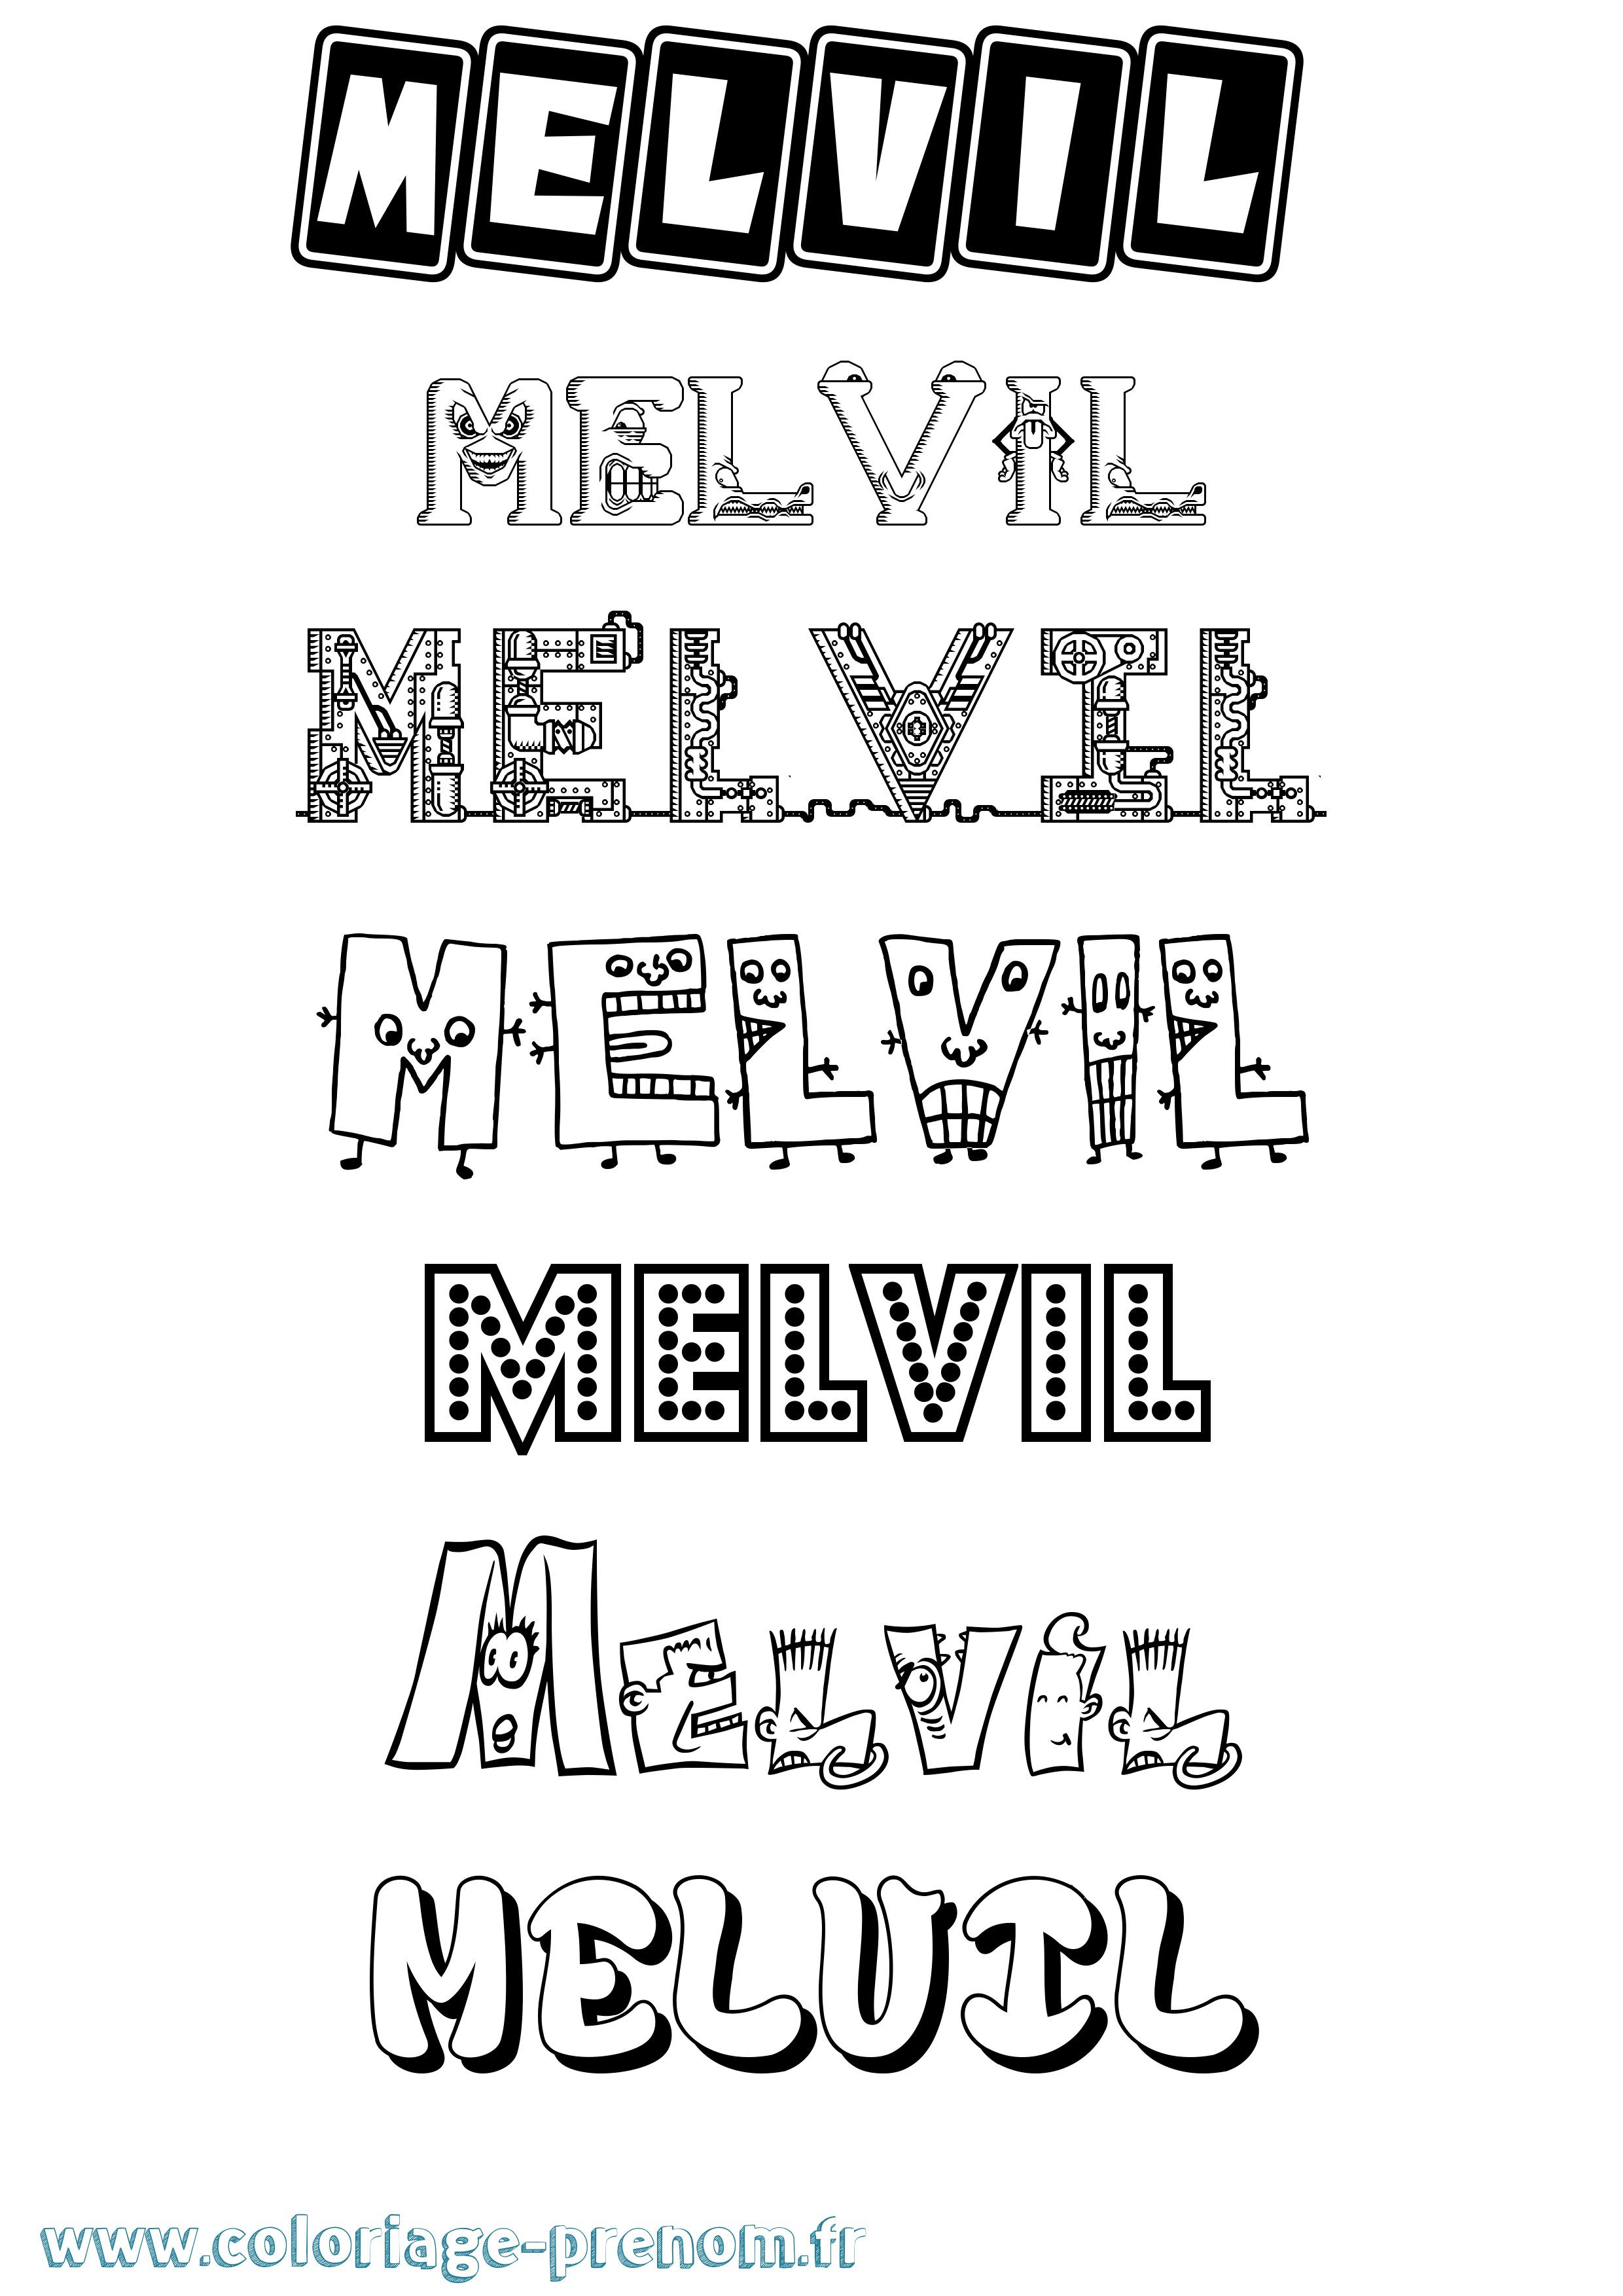 Coloriage prénom Melvil